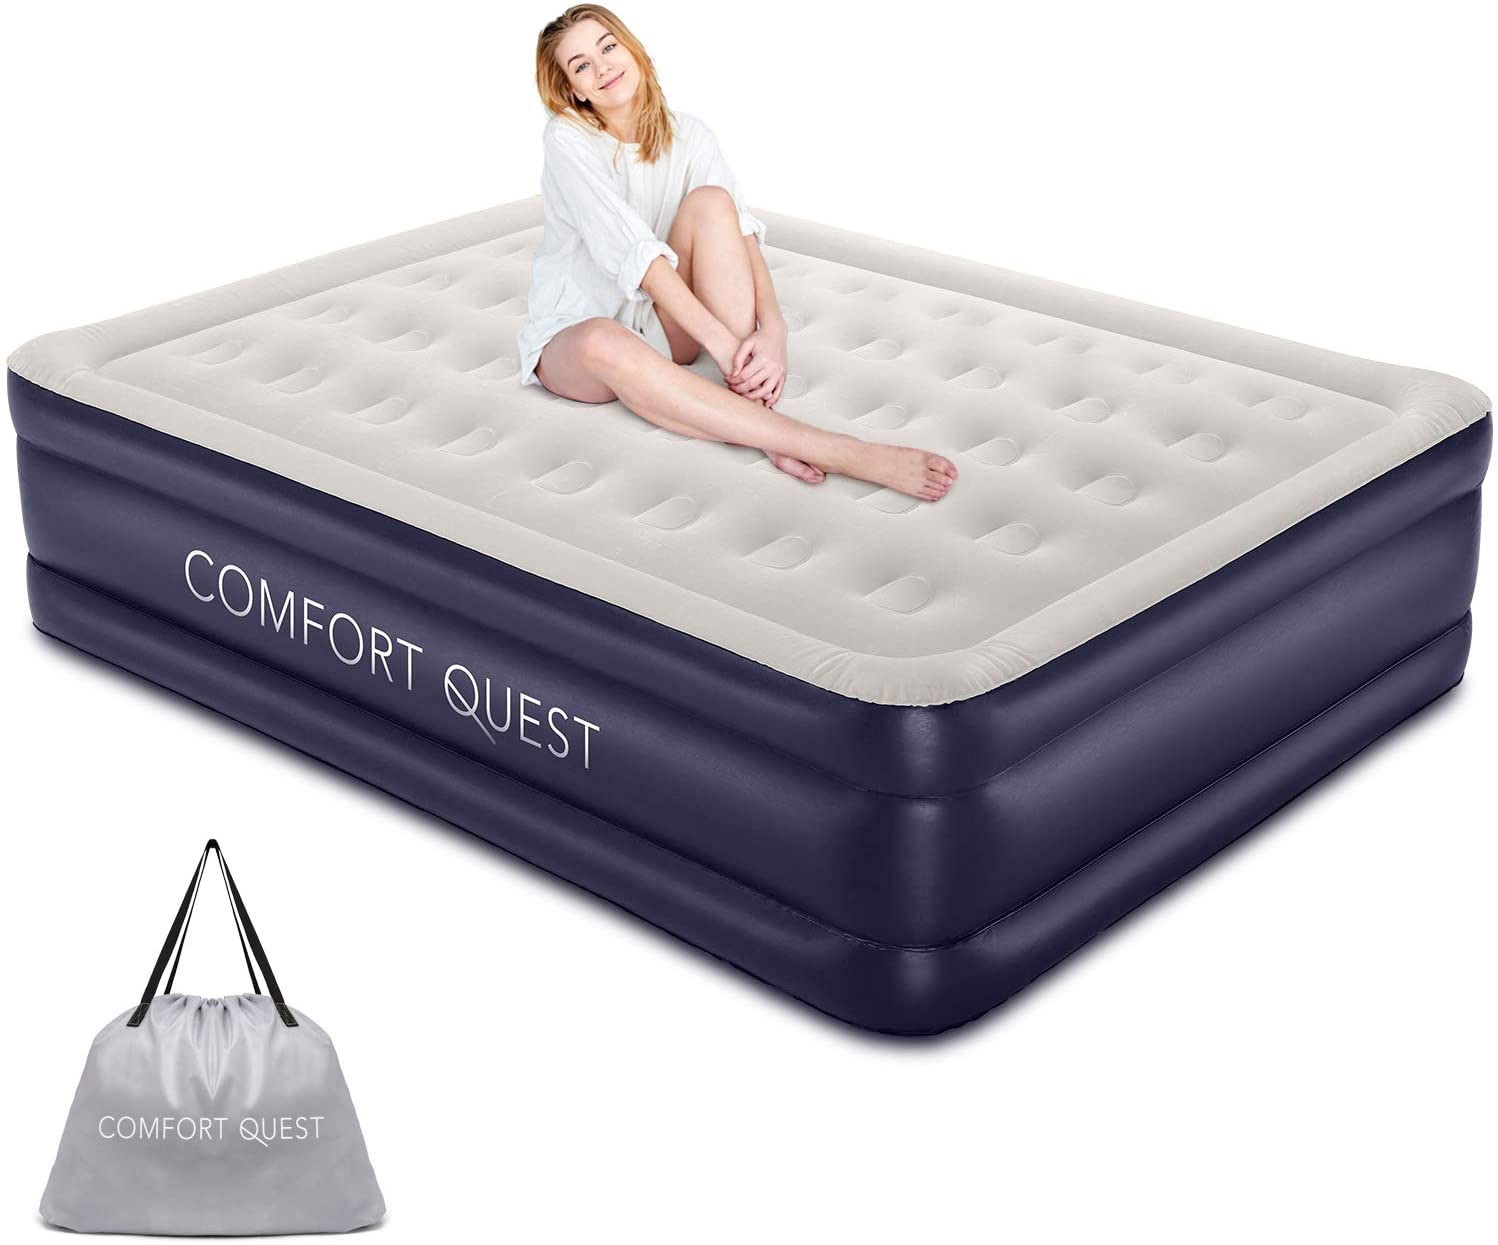 comfort quest air mattress review